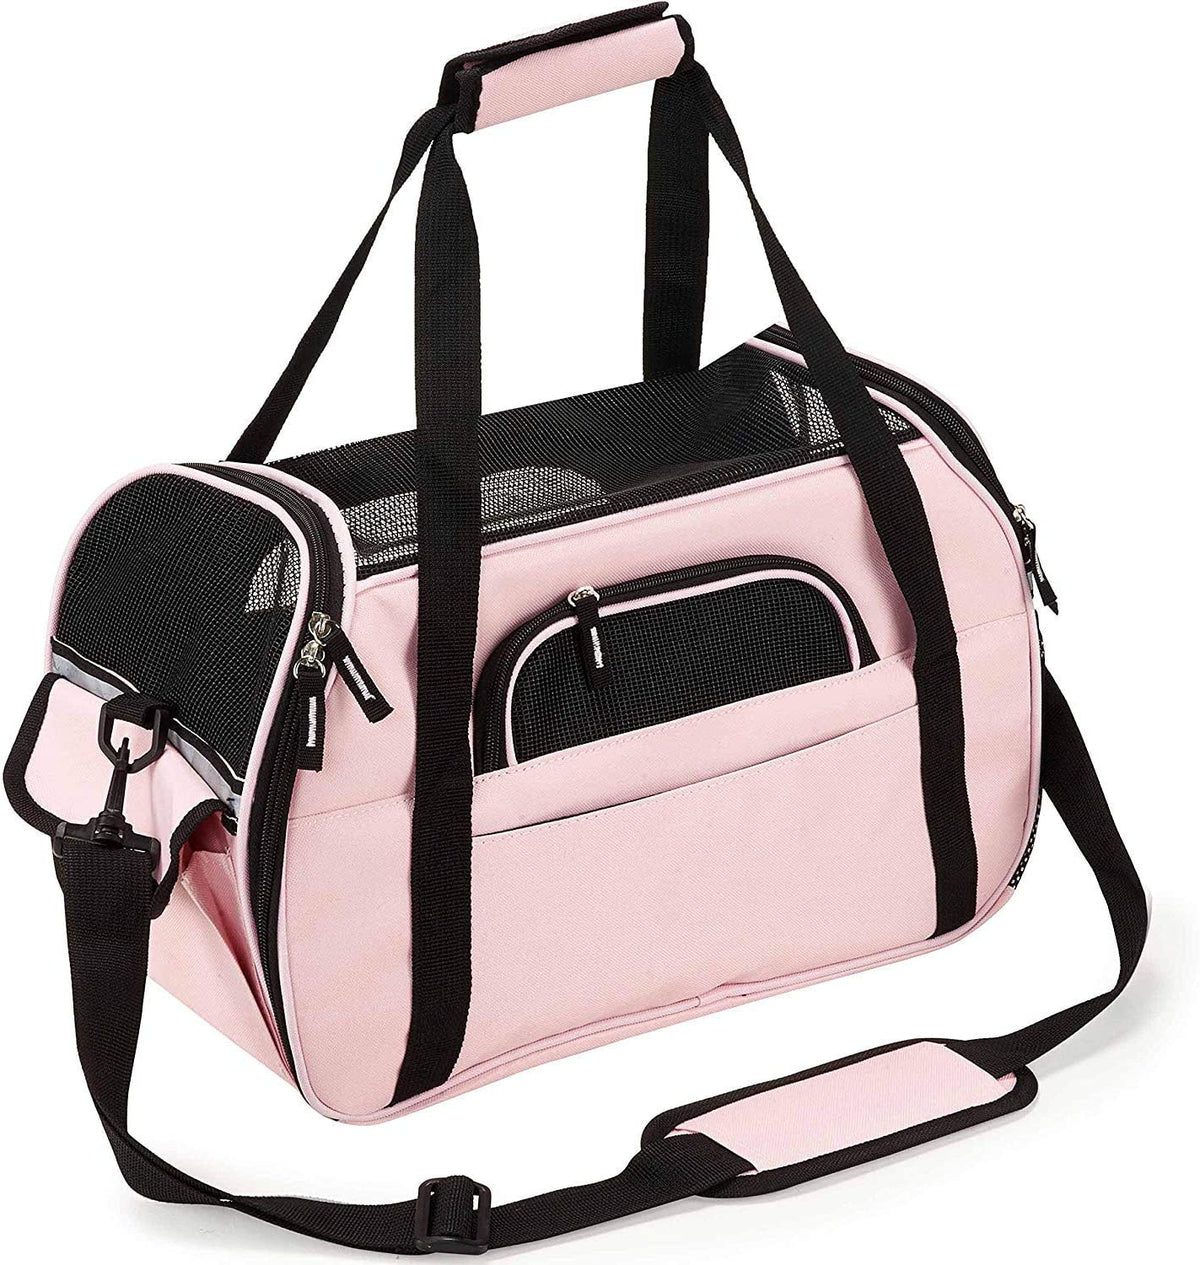 Fashion Bag - Guarde el bolso donde pueda respirar Nunca guarde el